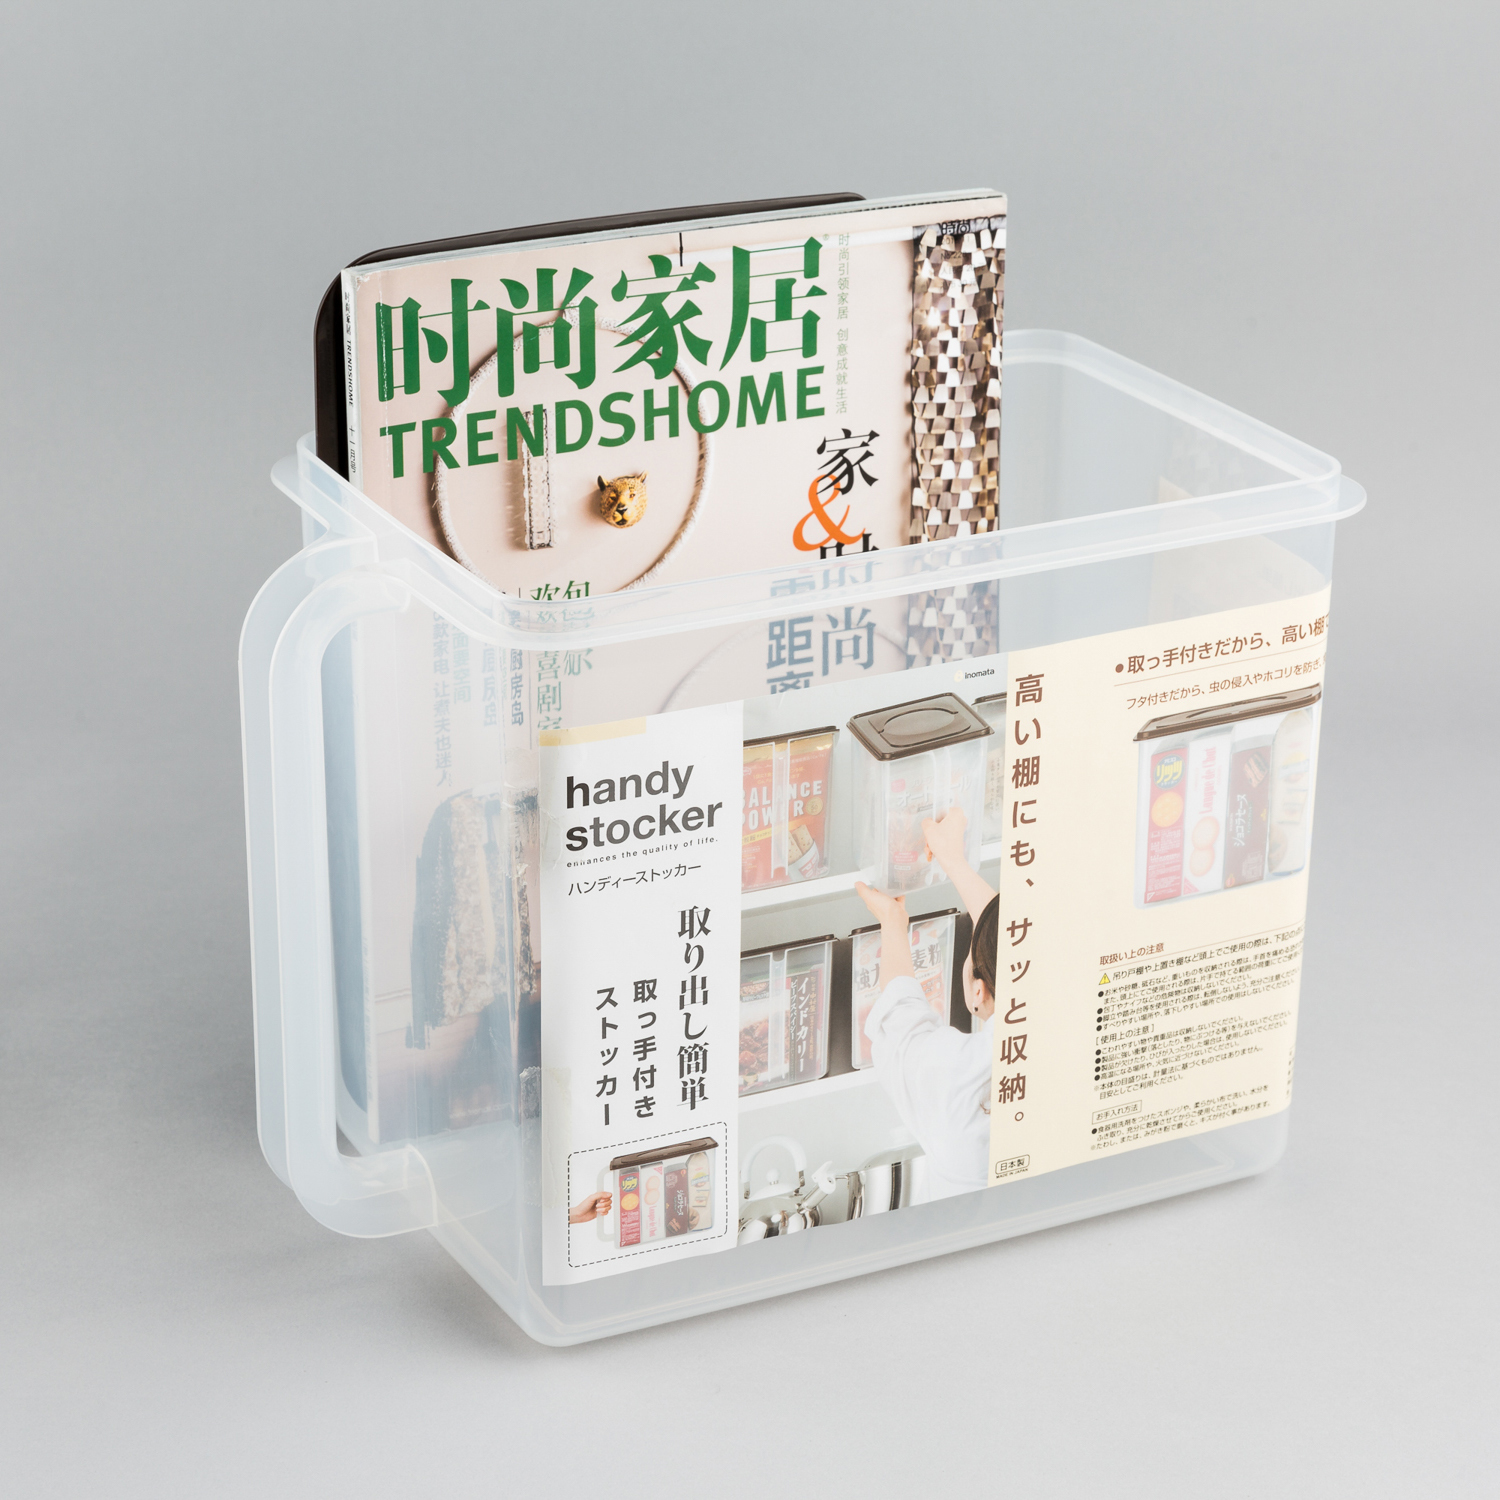 日本原产inomata厨房收纳箱带盖收纳盒带手柄收纳筐 深型 棕色